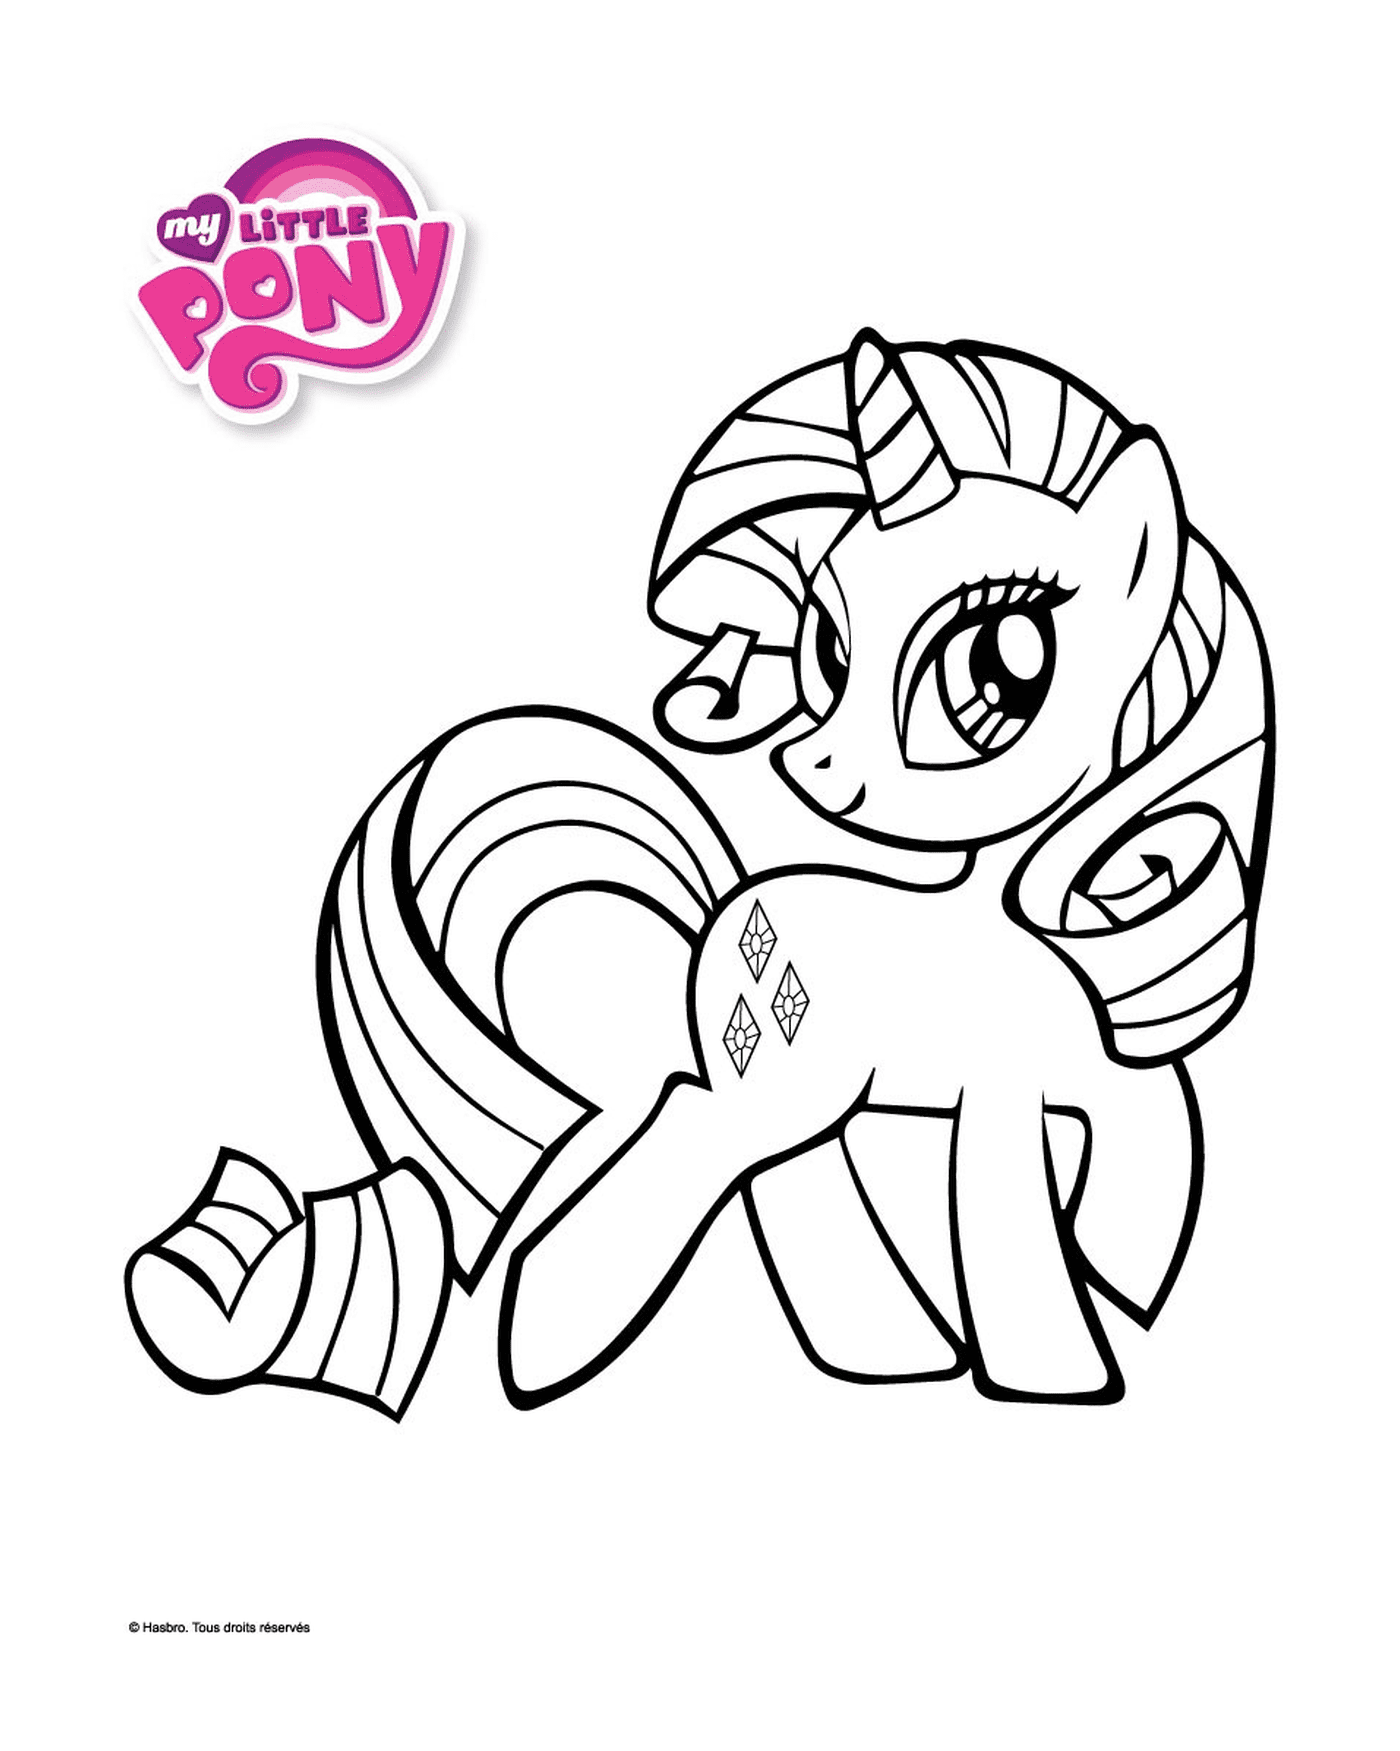  Rarity, un pony elegante con una cinta 